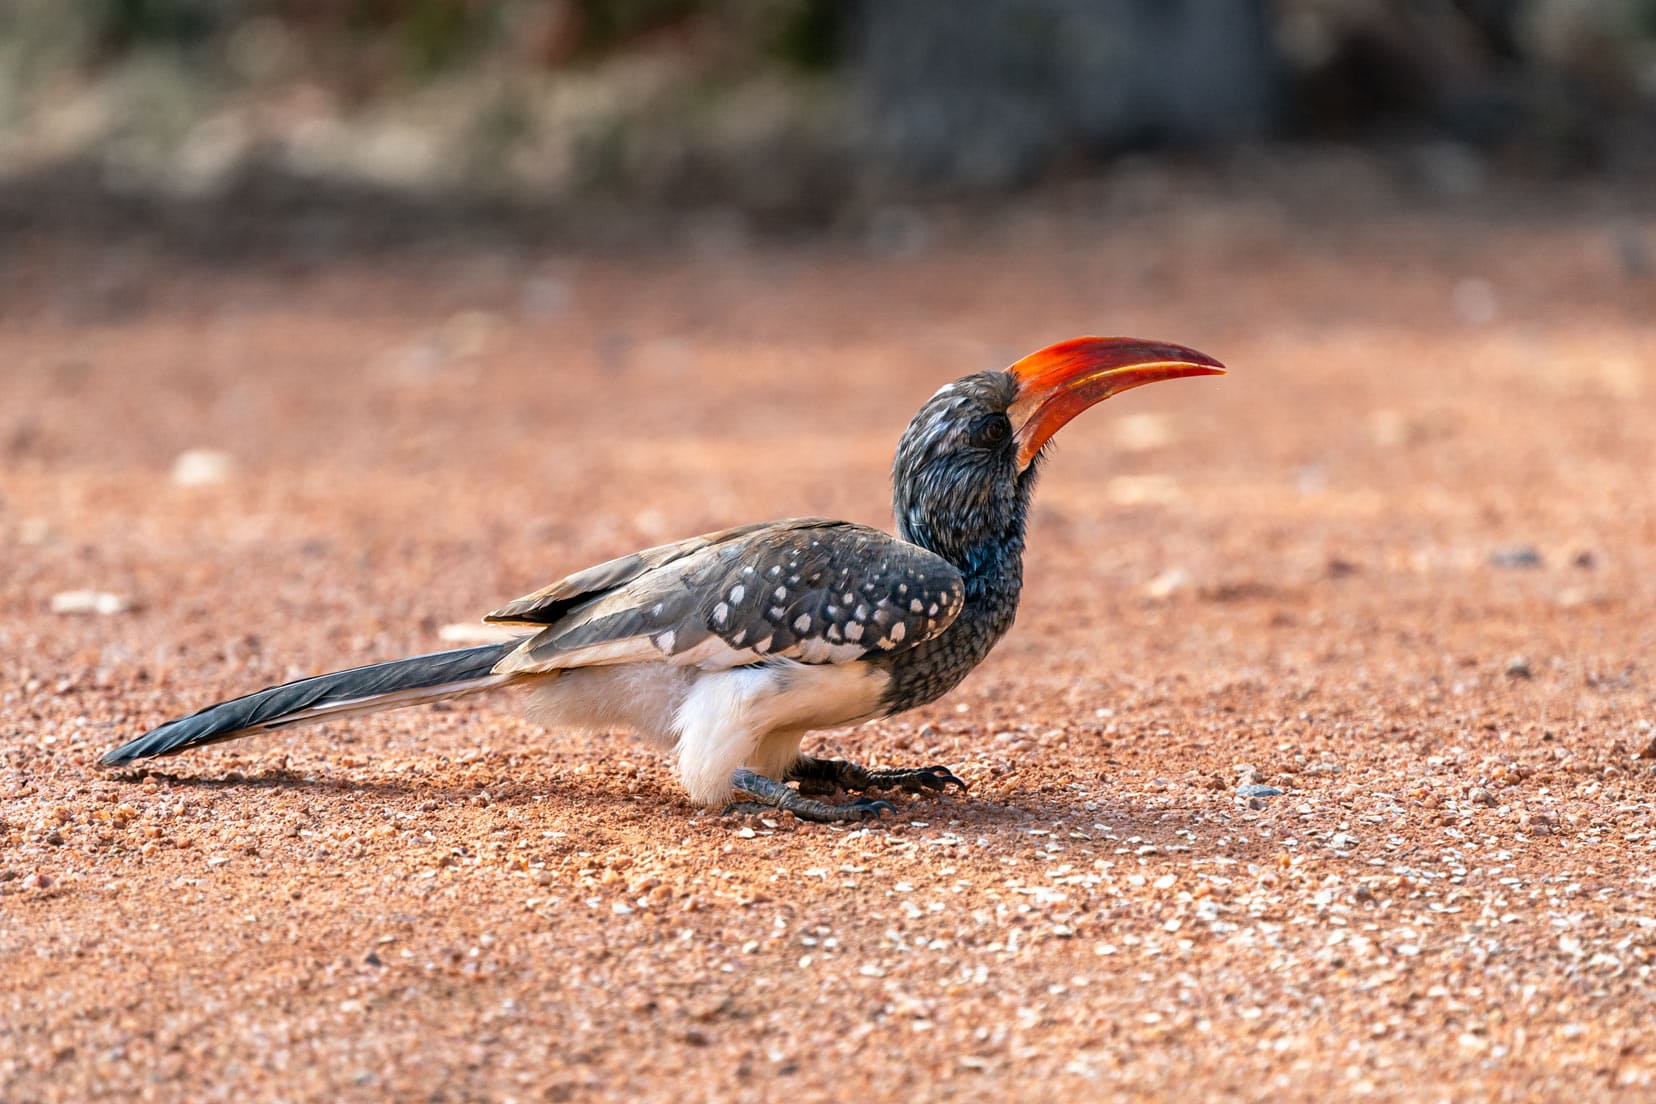 Red-billed-hornbill_birds-in-kruger-national-park